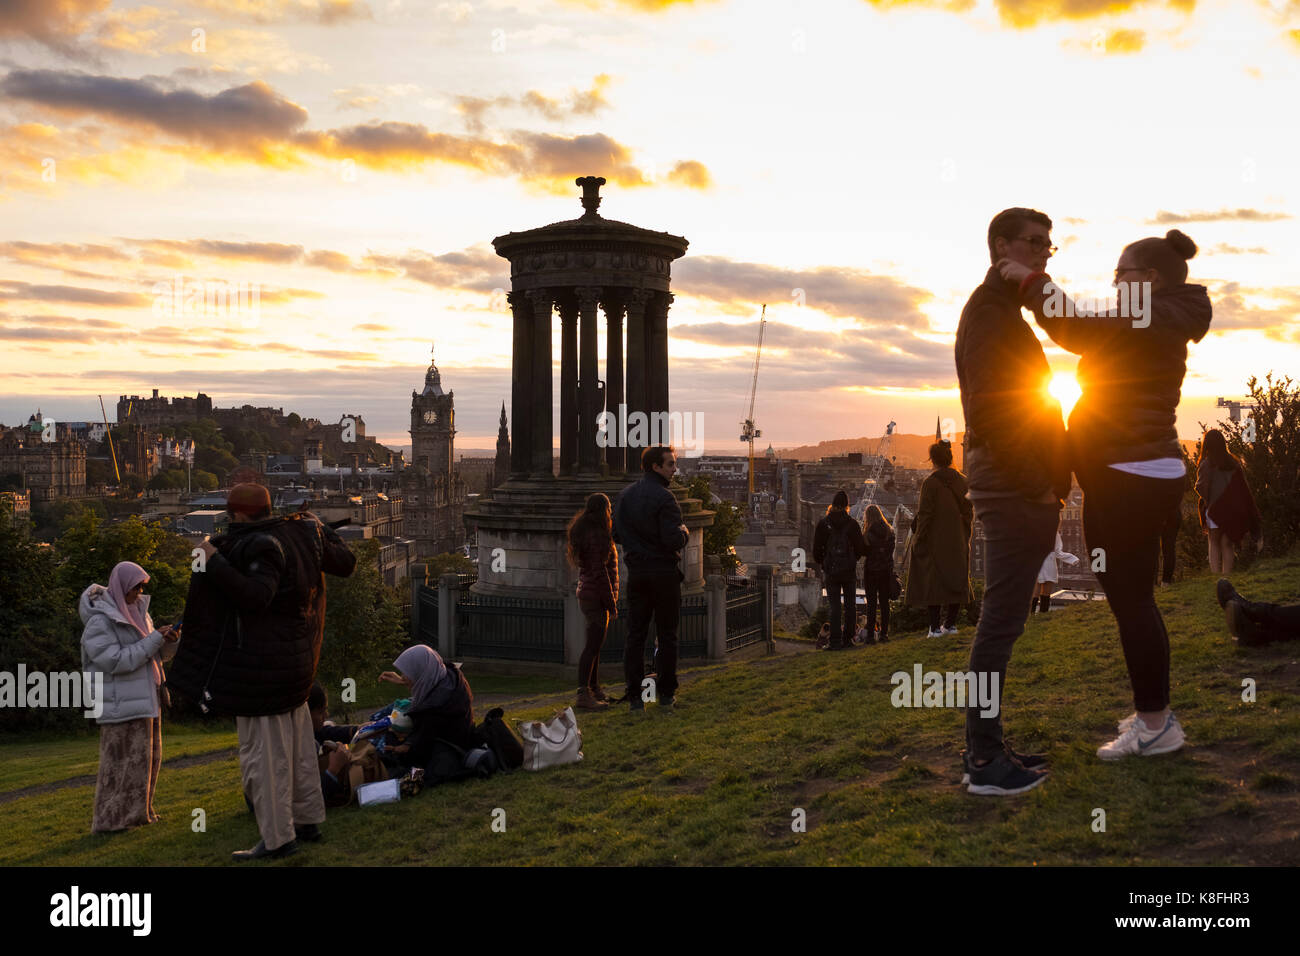 Edinburgh, Schottland, Vereinigtes Königreich. 19 Sep, 2017. UK Wetter. Viele Touristen sammeln bei Sonnenuntergang an einem schönen sonnigen Abend auf dem Calton Hill der berühmte Blick über die Stadt zu genießen: Iain Masterton/Alamy leben Nachrichten Stockfoto